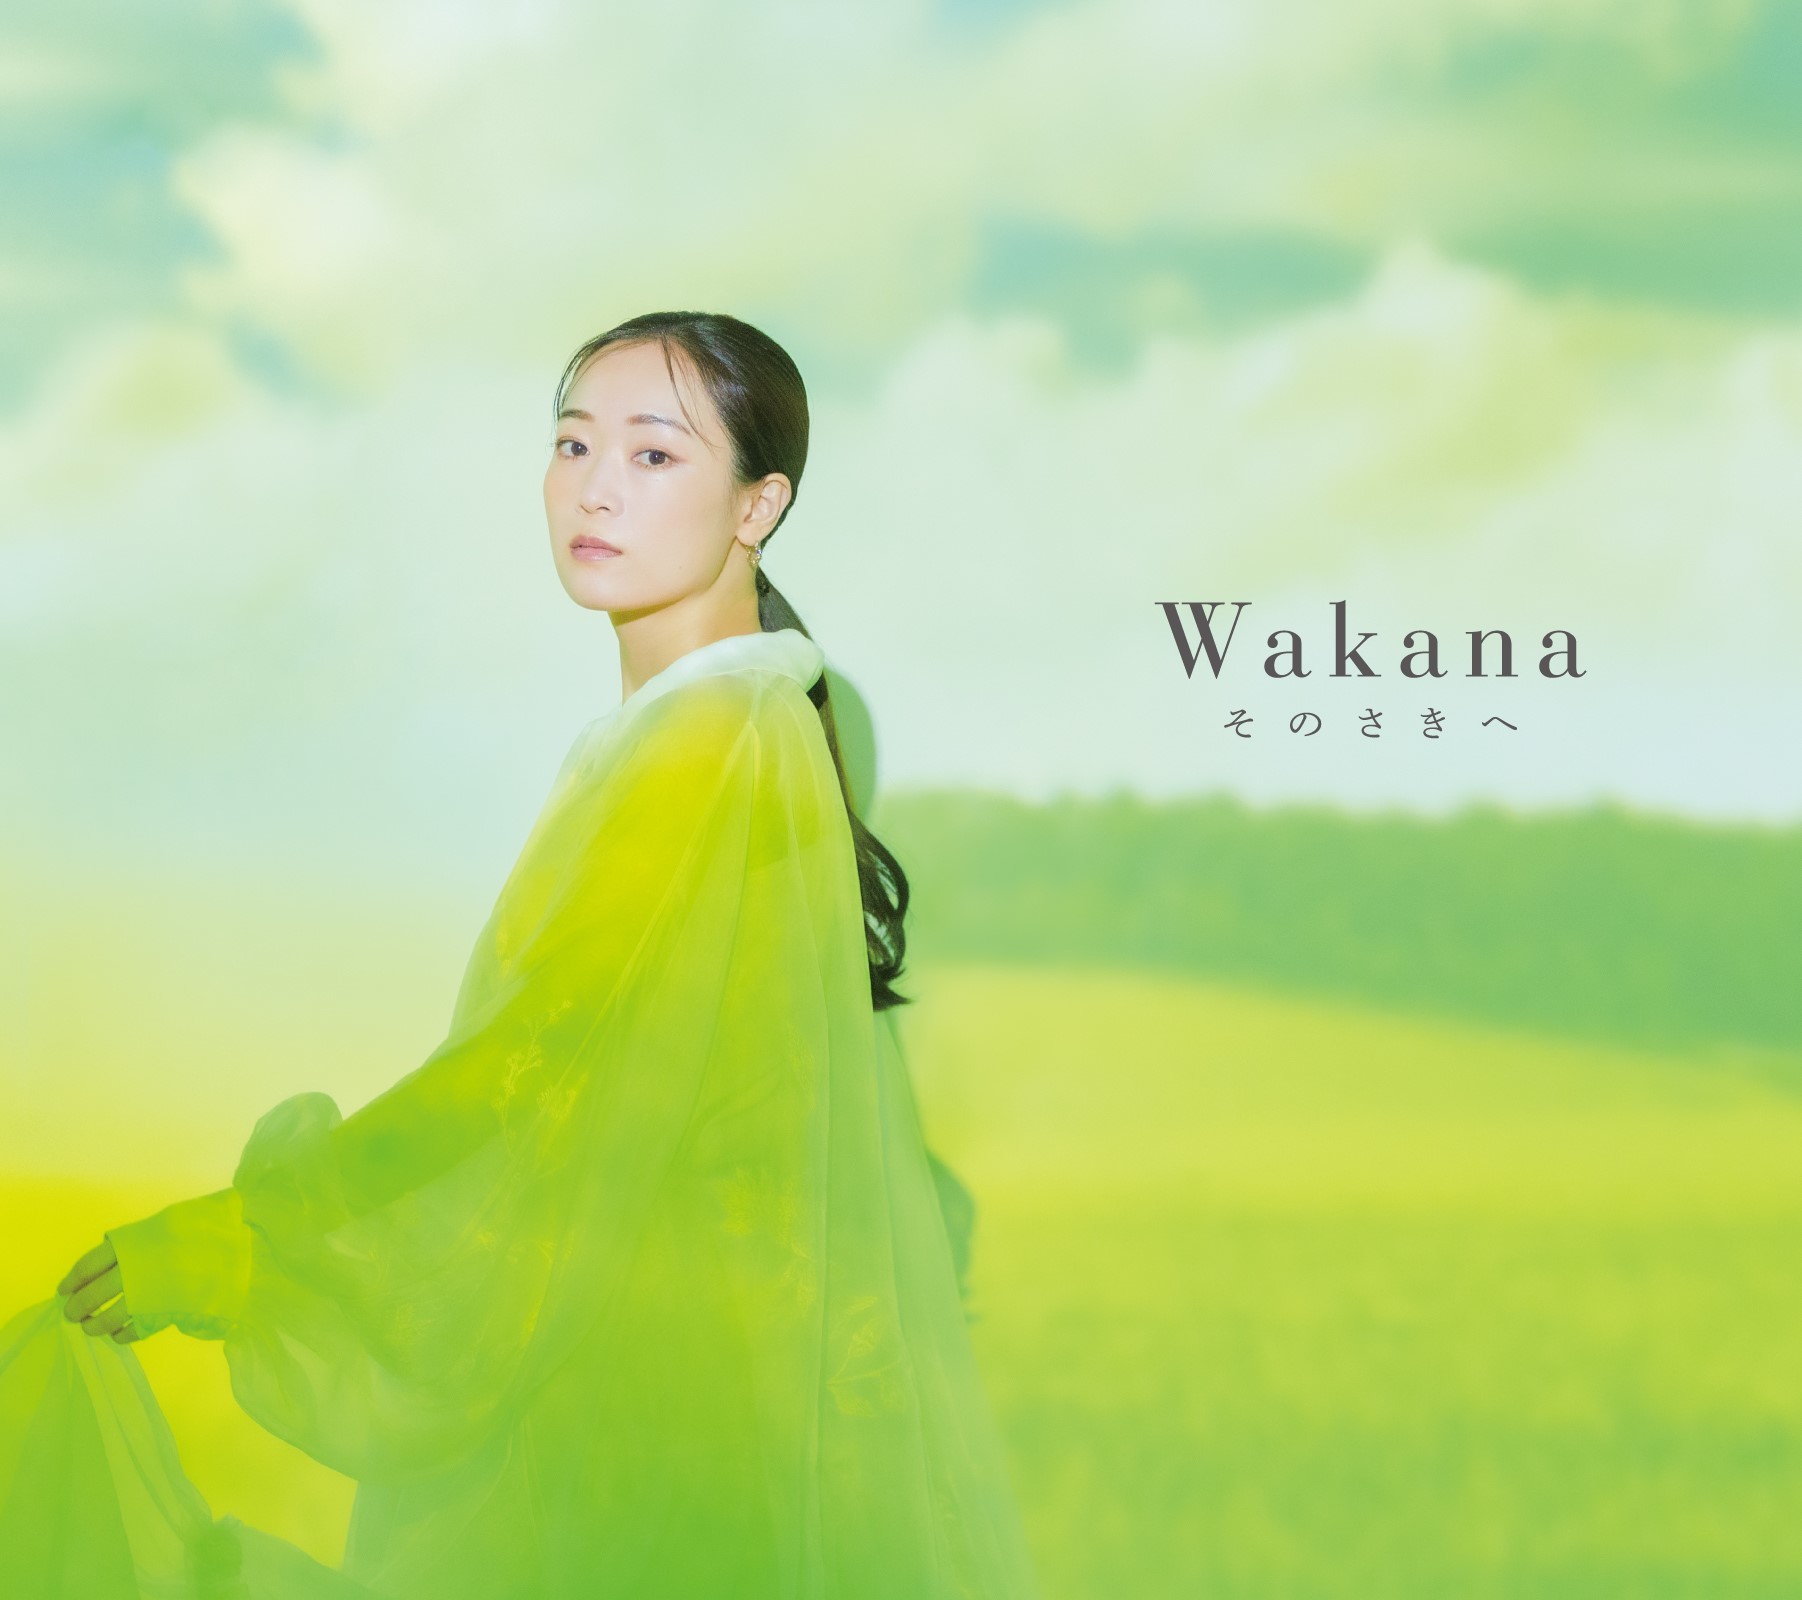 Wakana オリジナル3rdアルバム『そのさきへ』初回限定盤A